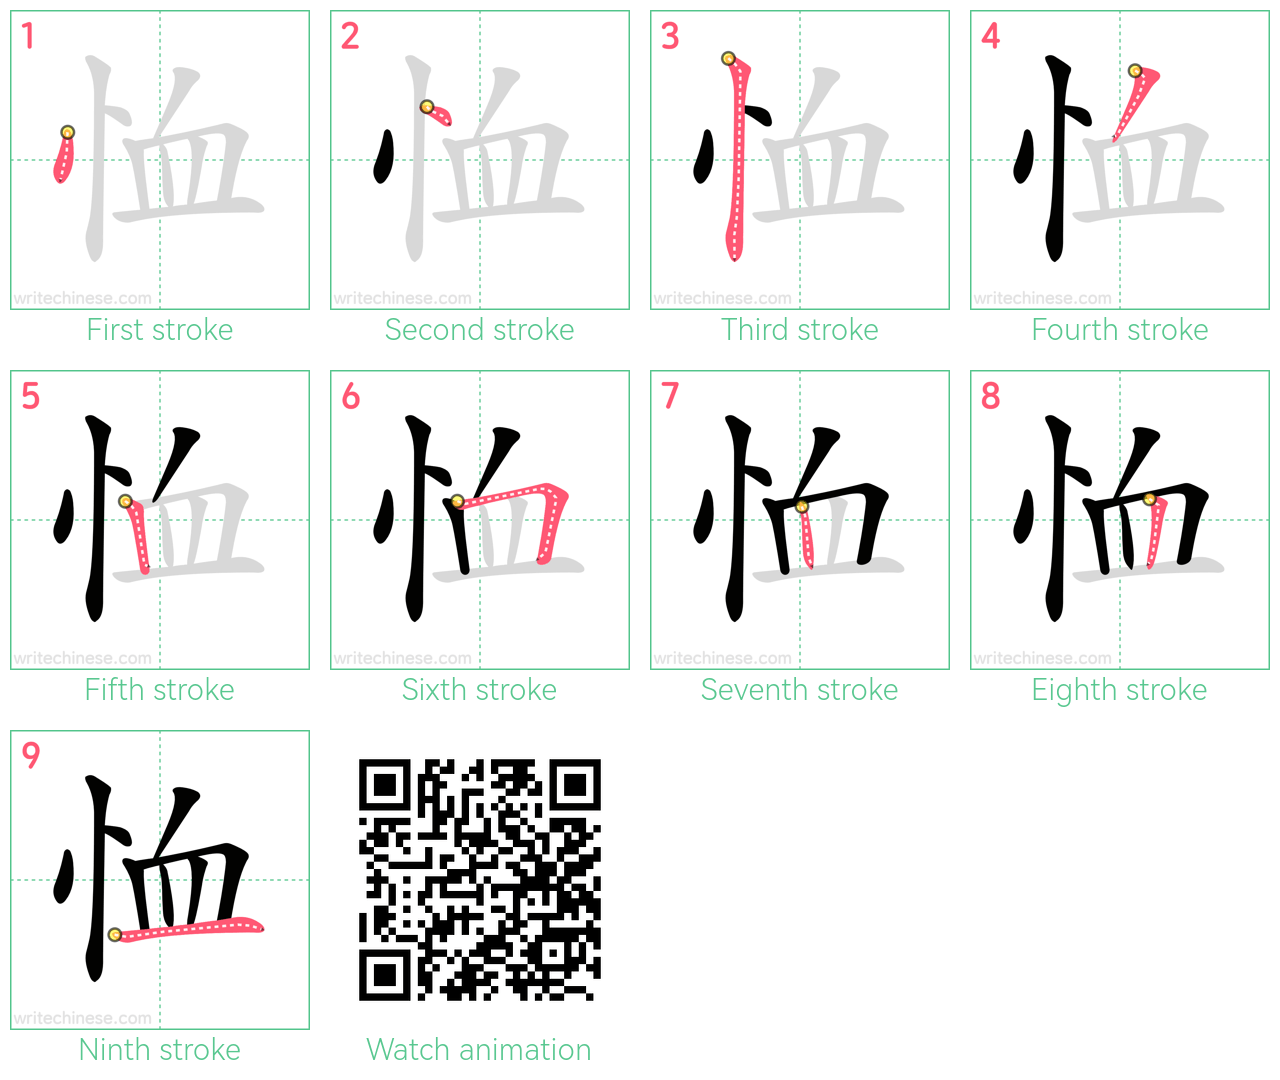 恤 step-by-step stroke order diagrams